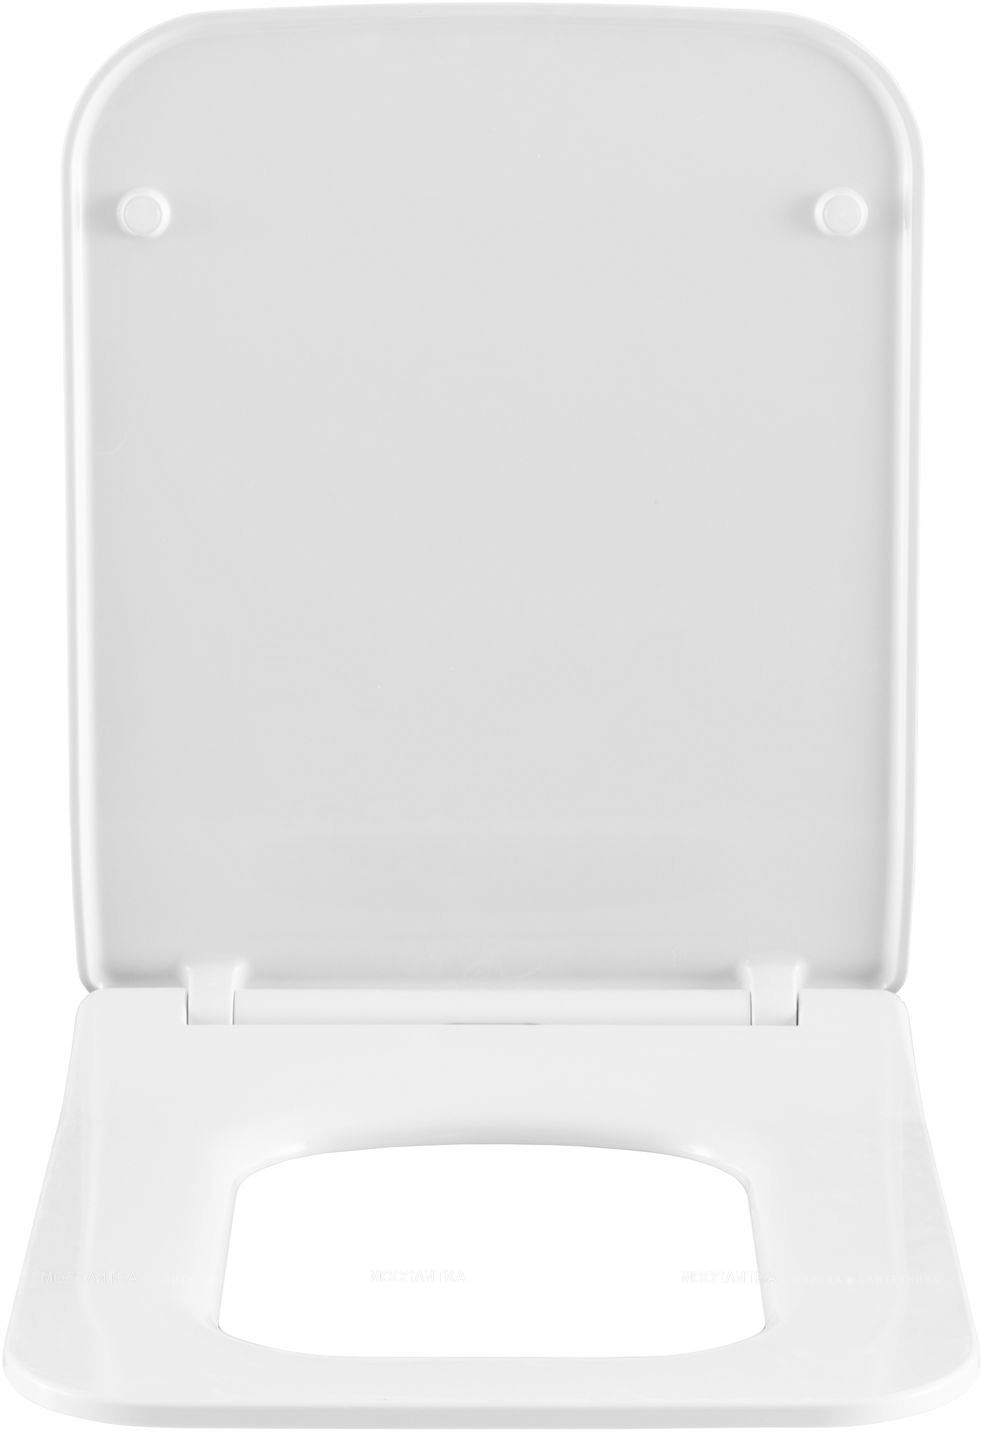 Крышка-сиденье для унитаза Allen Brau Liberty 4.33008.21 с микролифтом, белая матовая - изображение 6